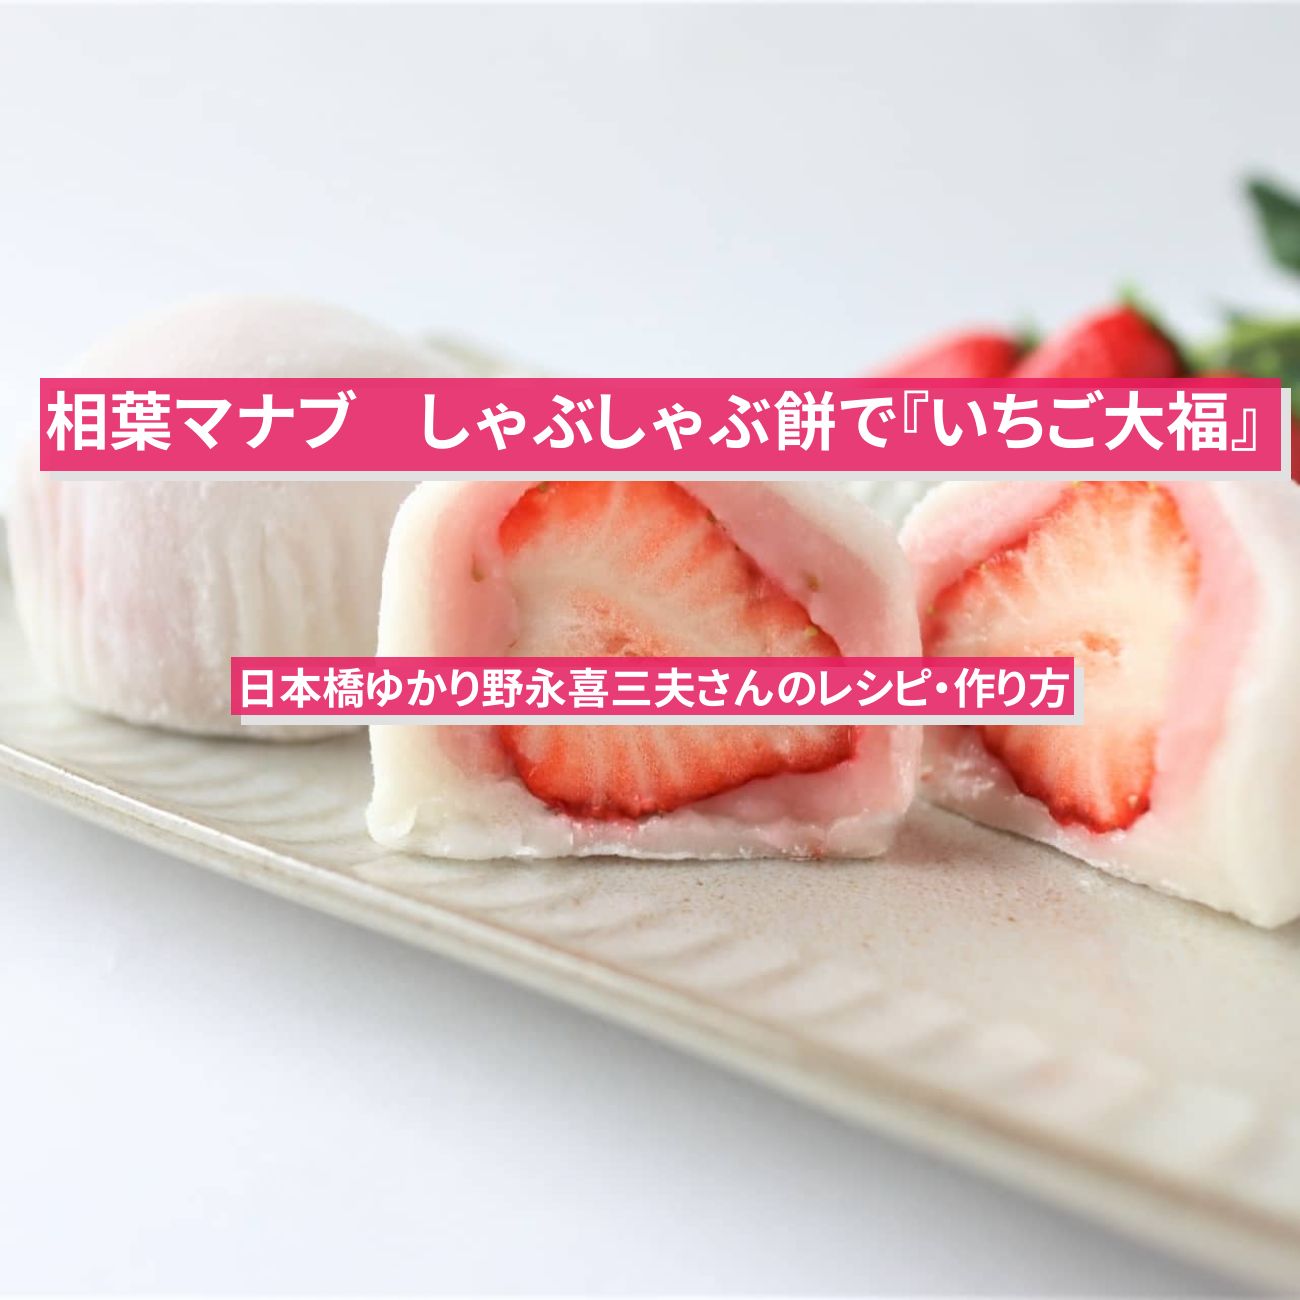 【相葉マナブ】しゃぶしゃぶ餅で『いちご大福』日本橋ゆかり野永喜三夫さんのレシピ・作り方